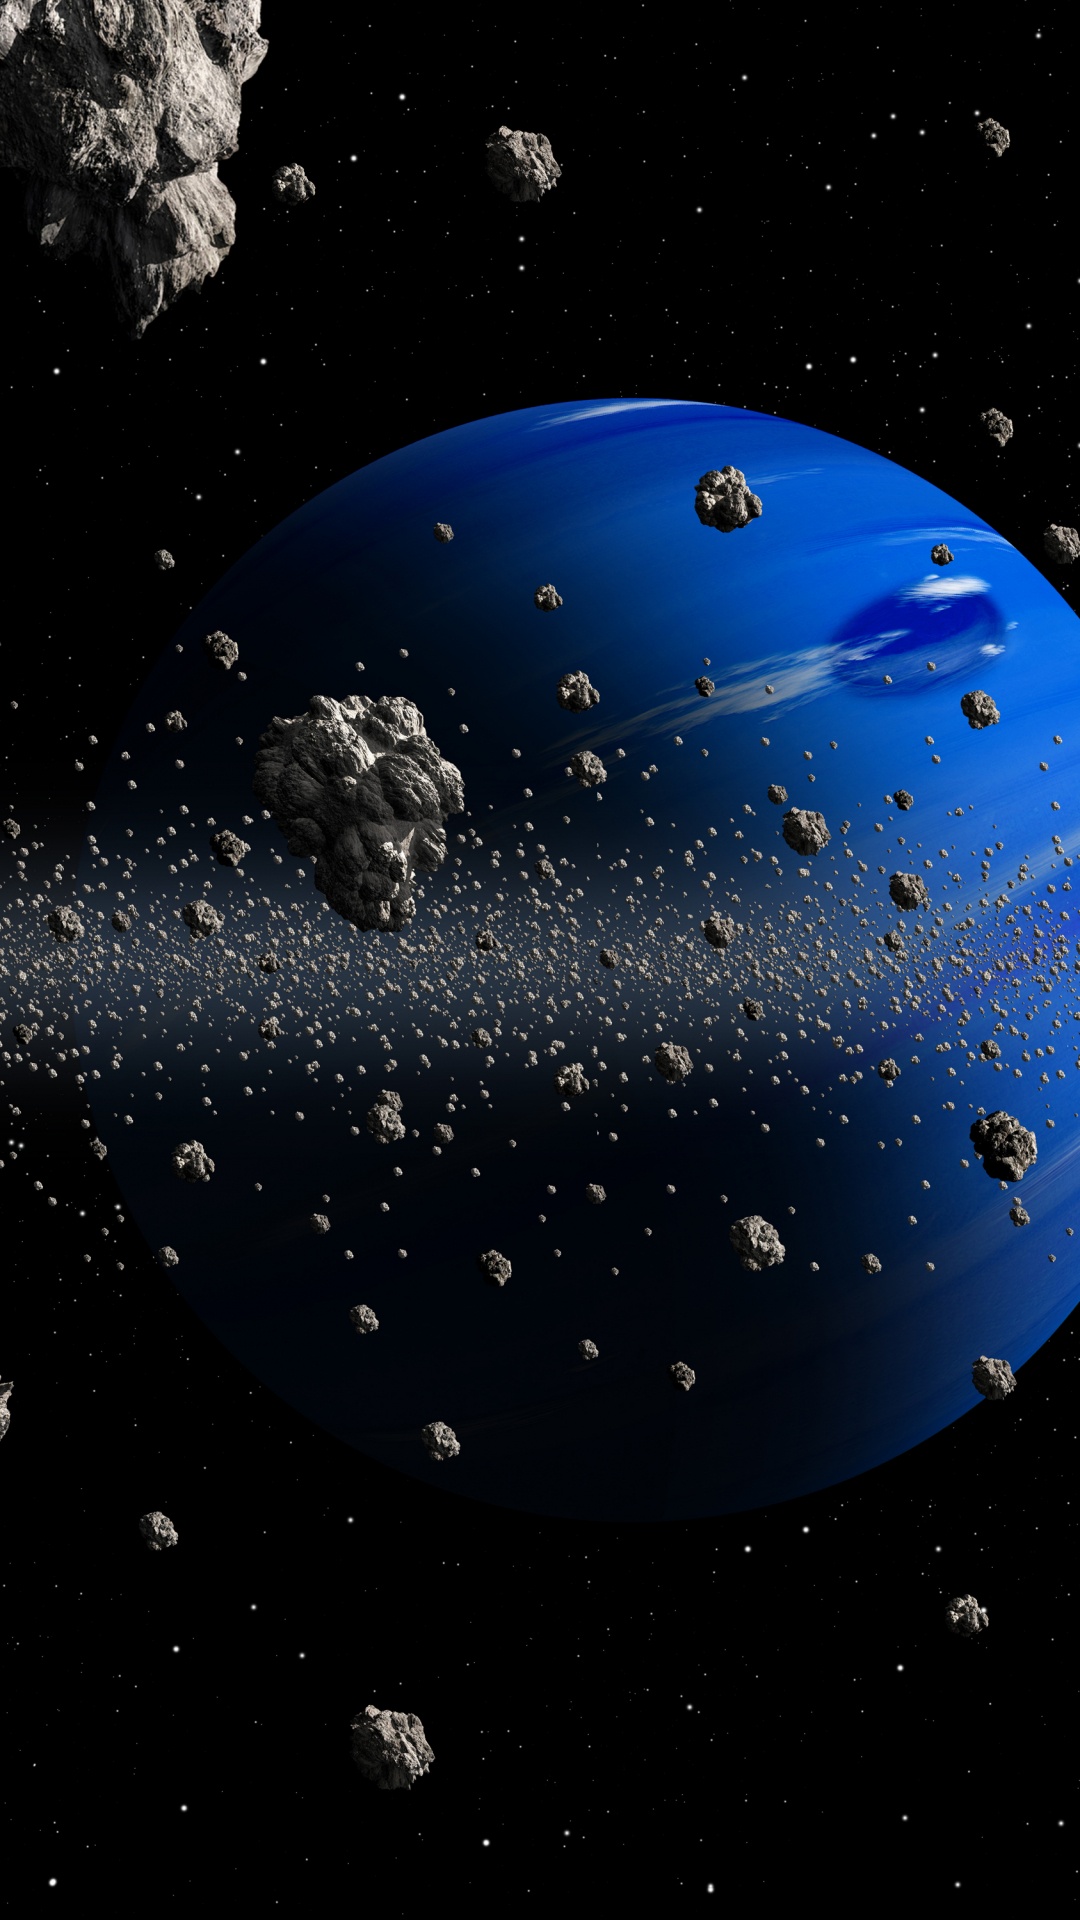 小行星, 这个星球, 空间, 外层空间, 天文学对象 壁纸 1080x1920 允许